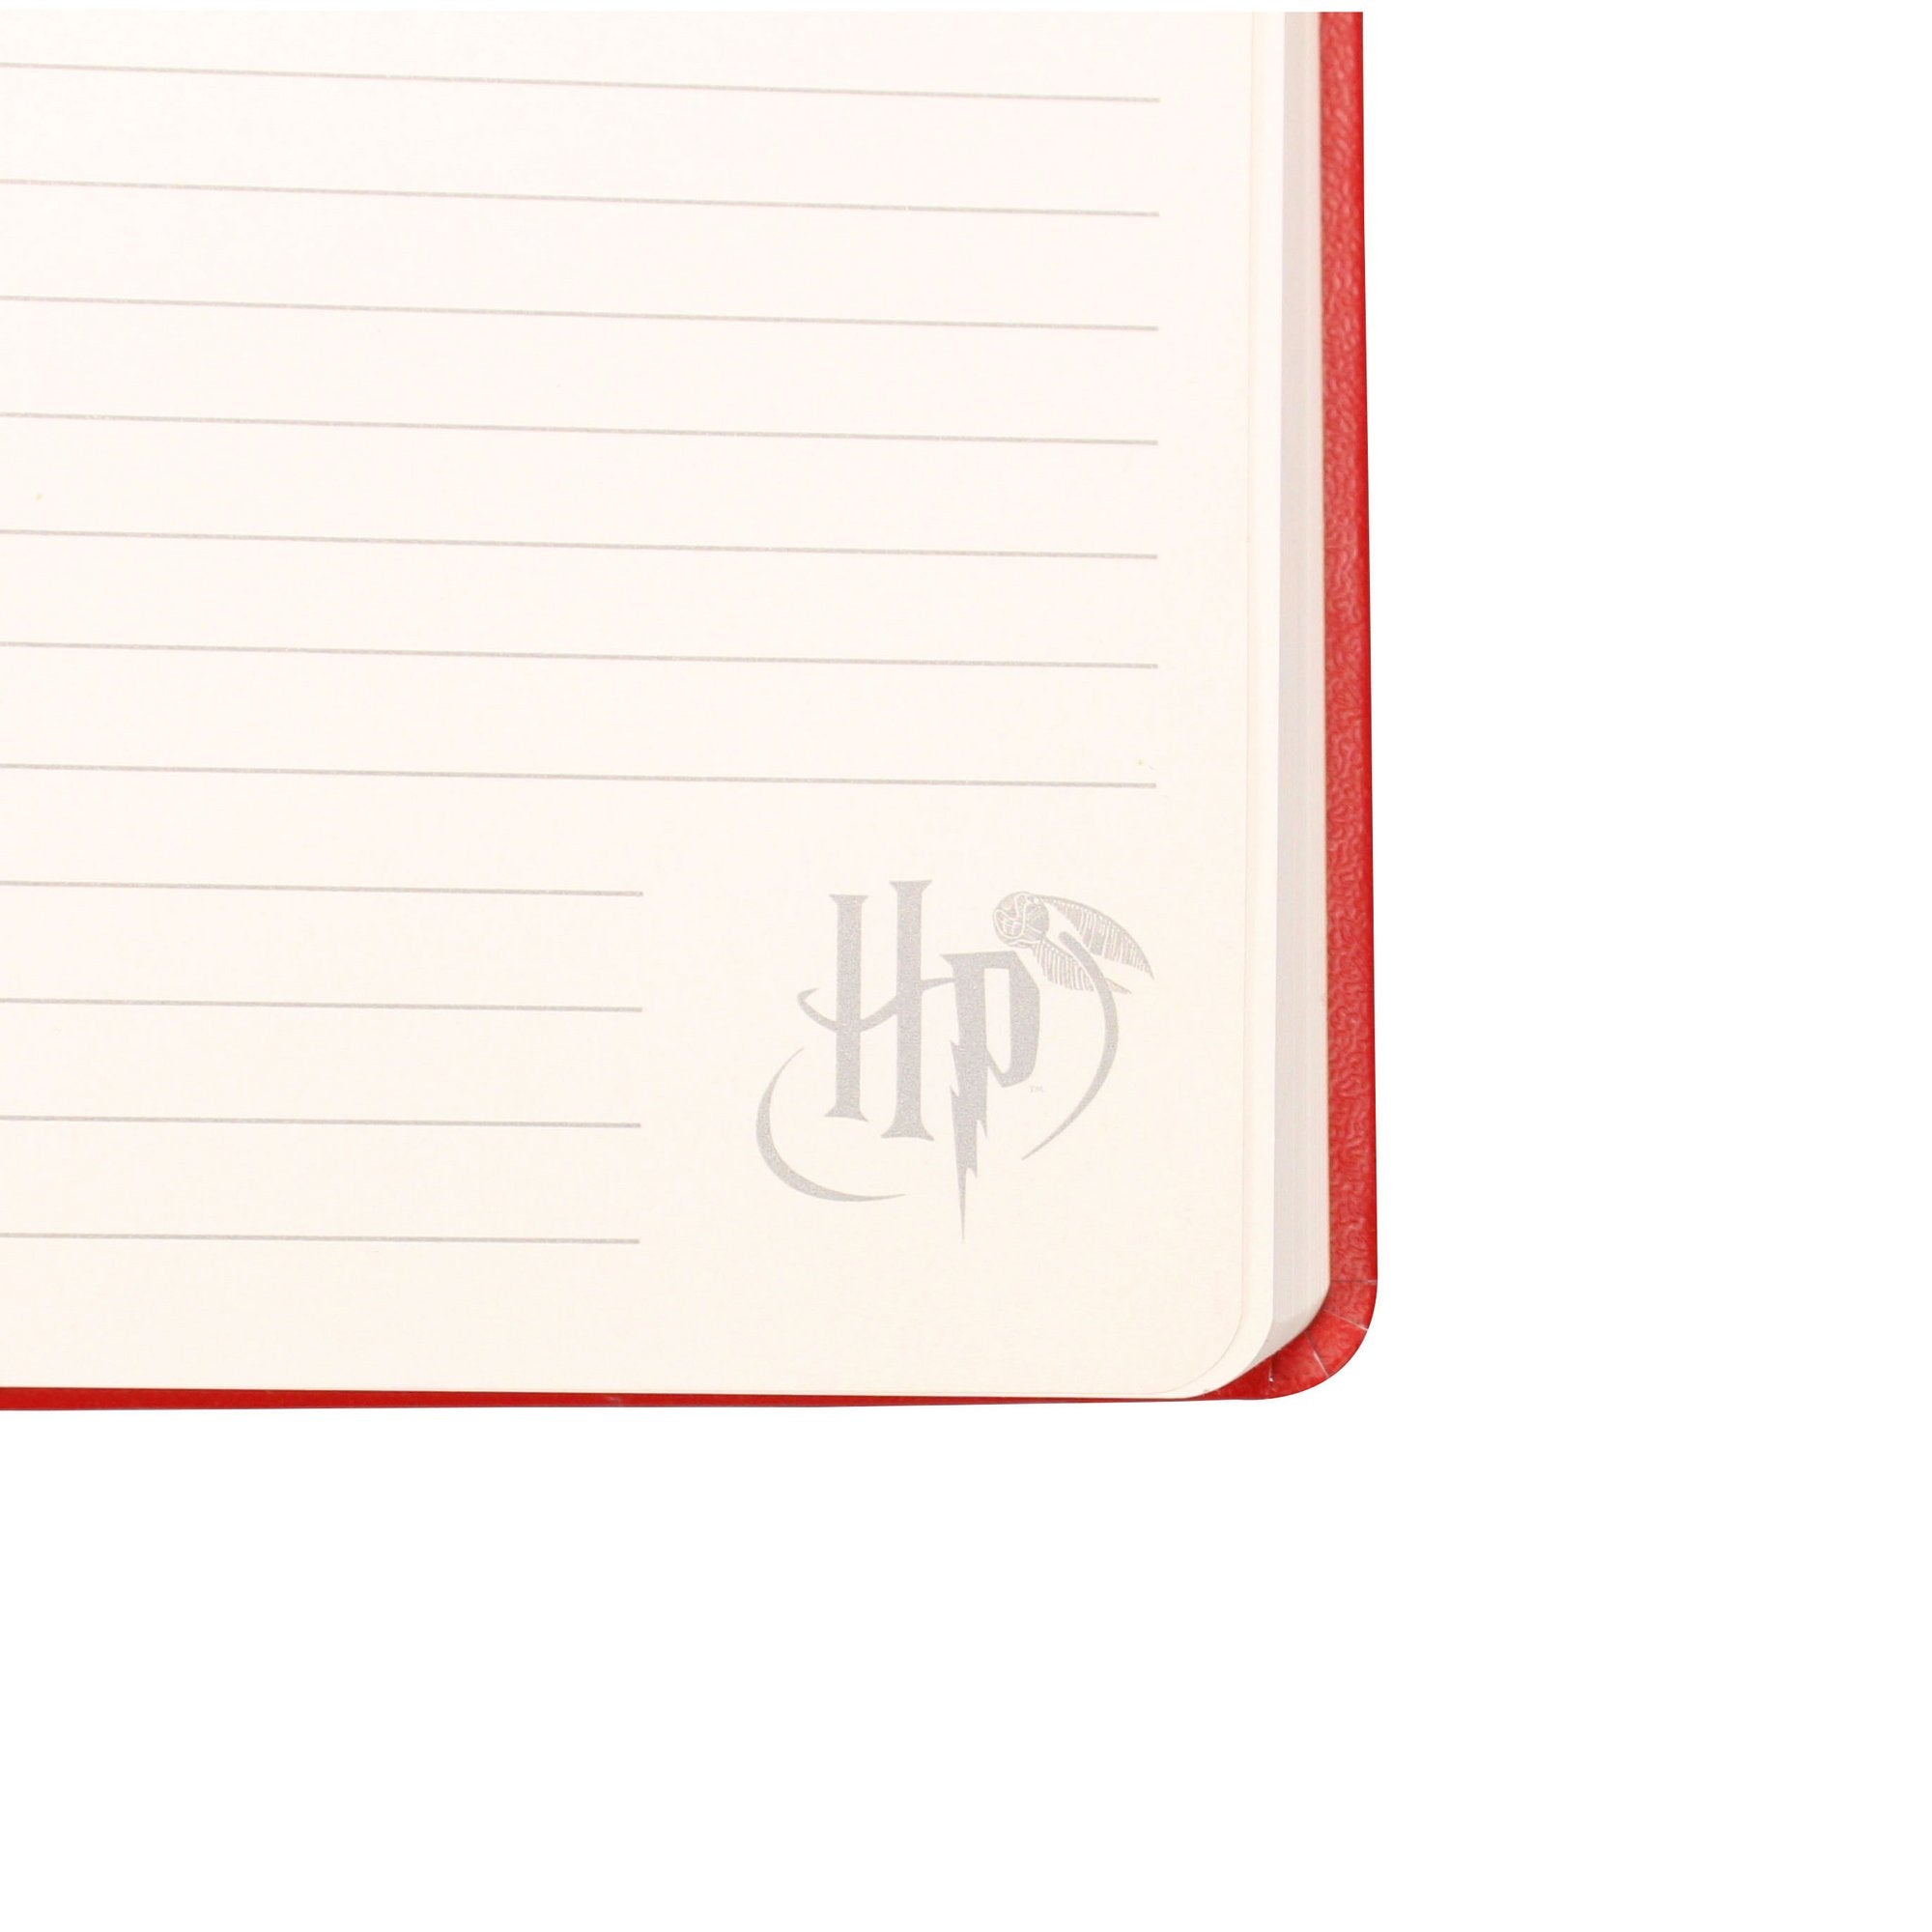 Harry Potter A5 Notebook - Gryffindor Crest